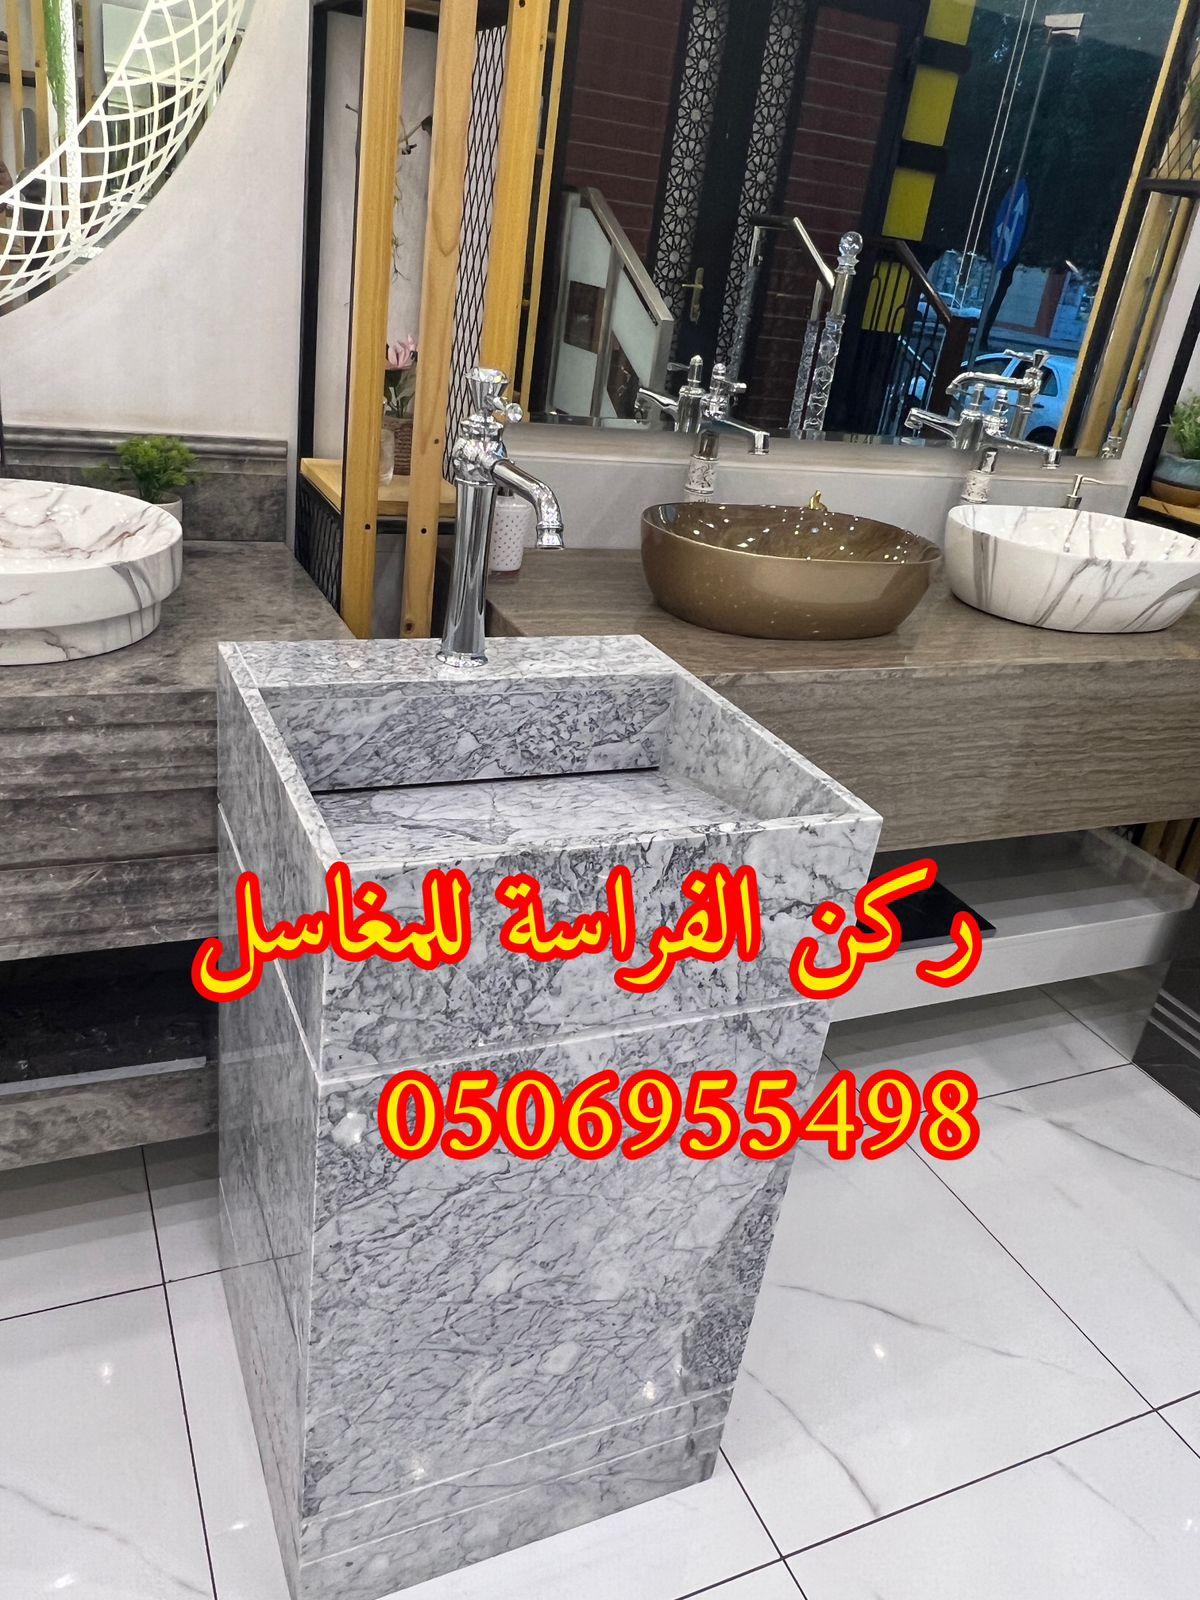 الرياض - مغاسل حمامات رخام مودرن فخمة في الرياض,0506955498 512695694